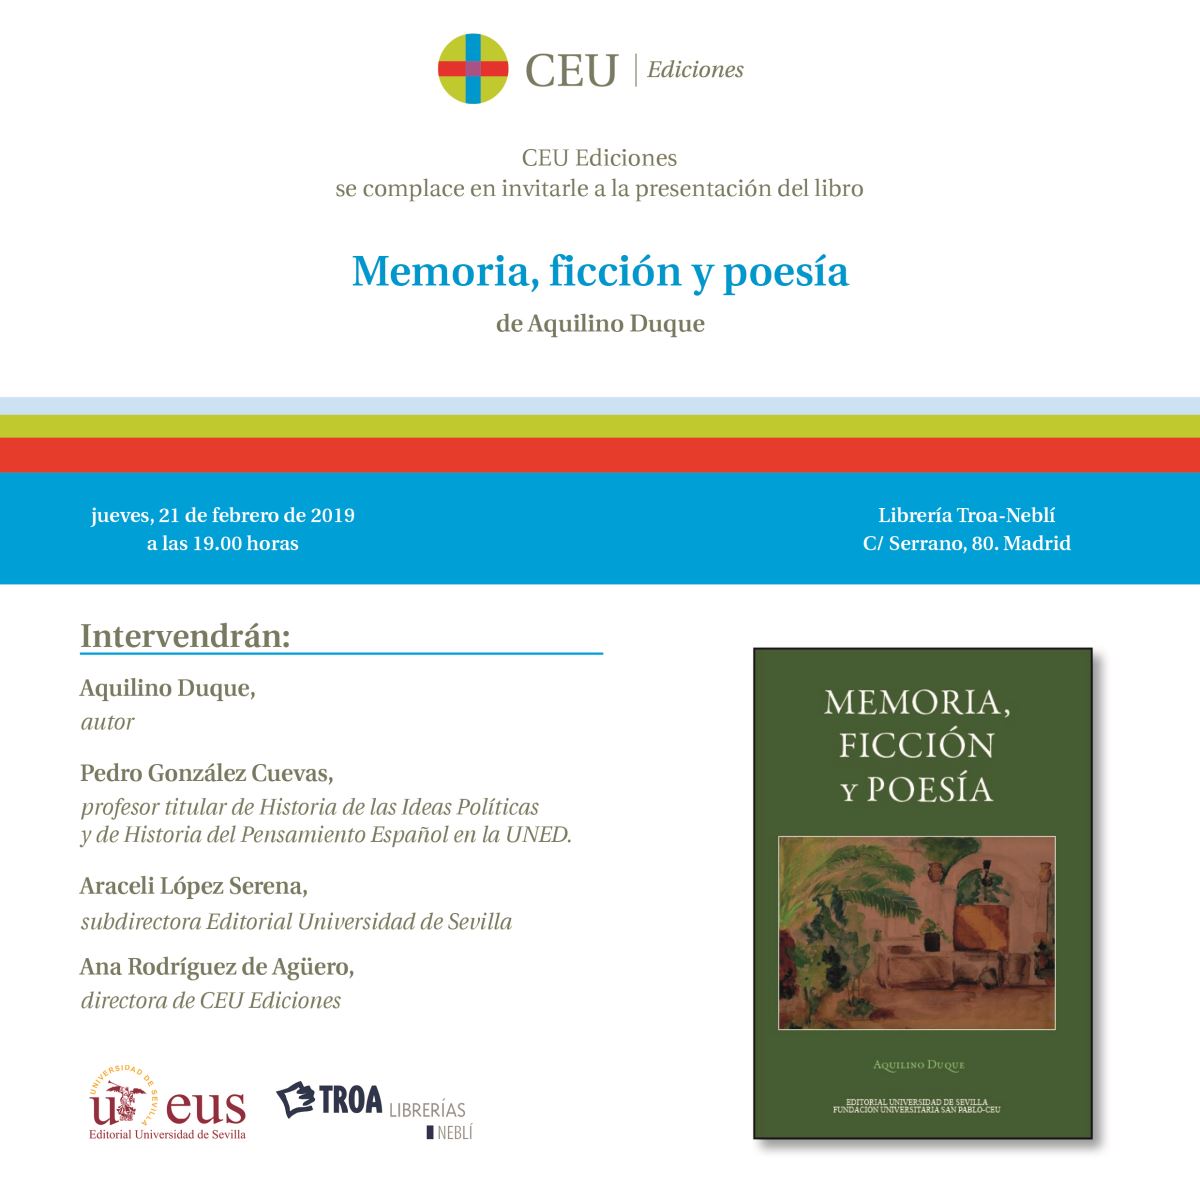 Editorial Universidad de Sevilla y Ediciones CEU presentan el libro "Memoria, ficción y poesía"